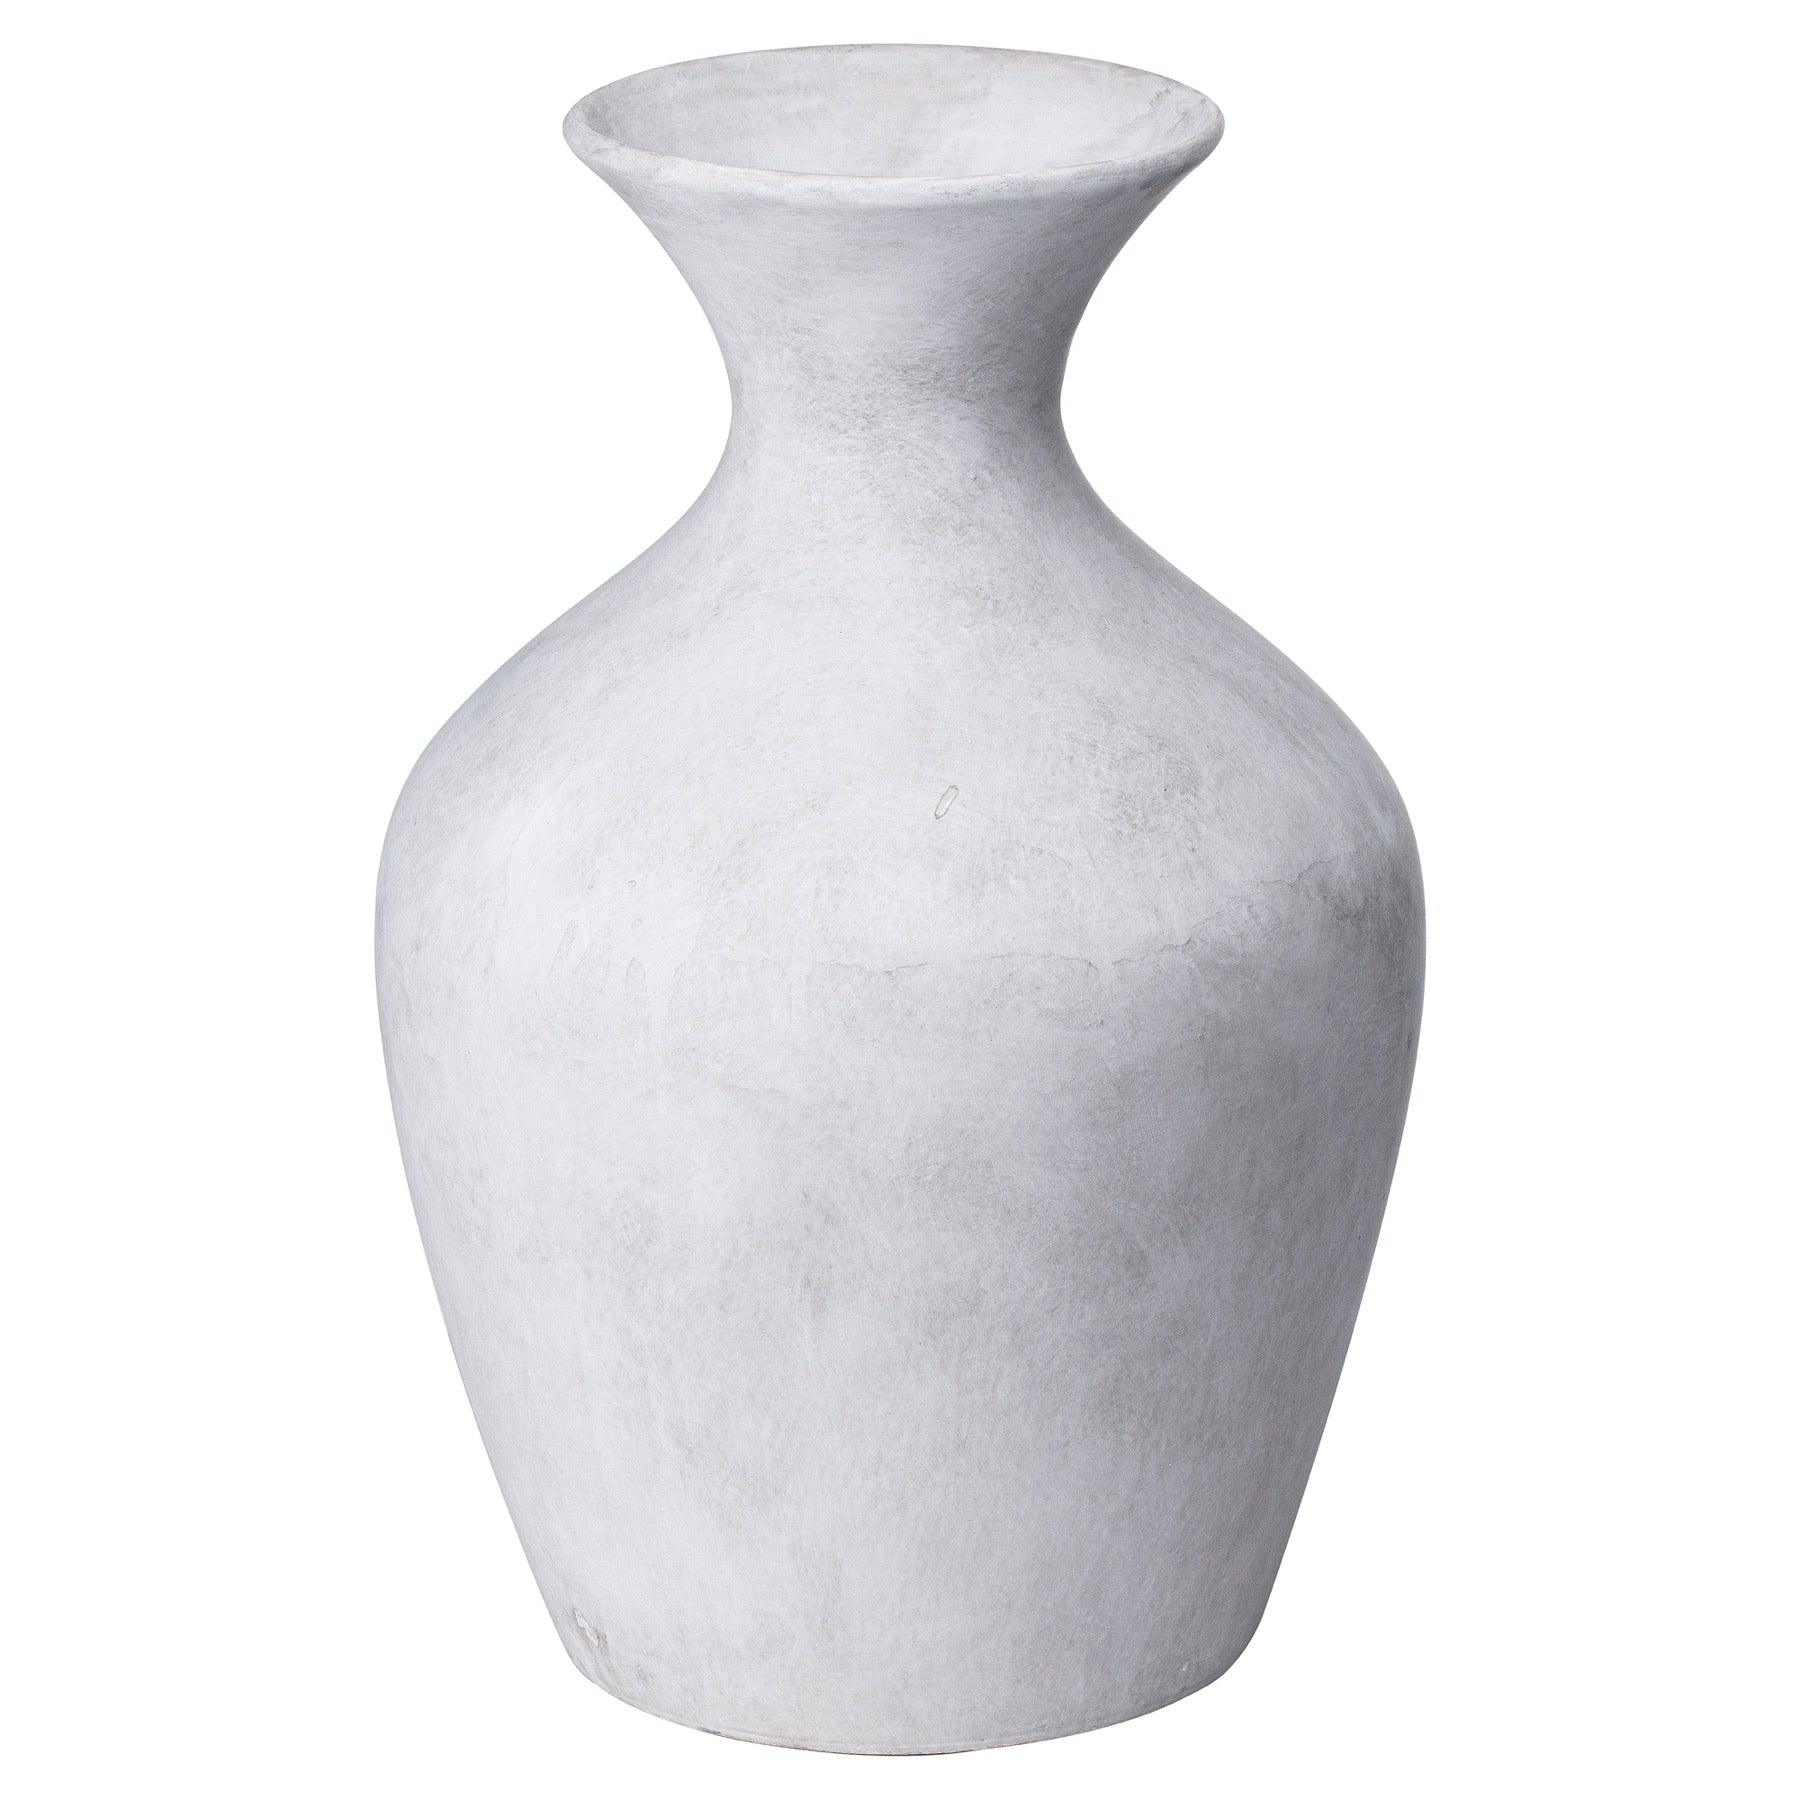 View Darcy Ellipse Stone Vase information